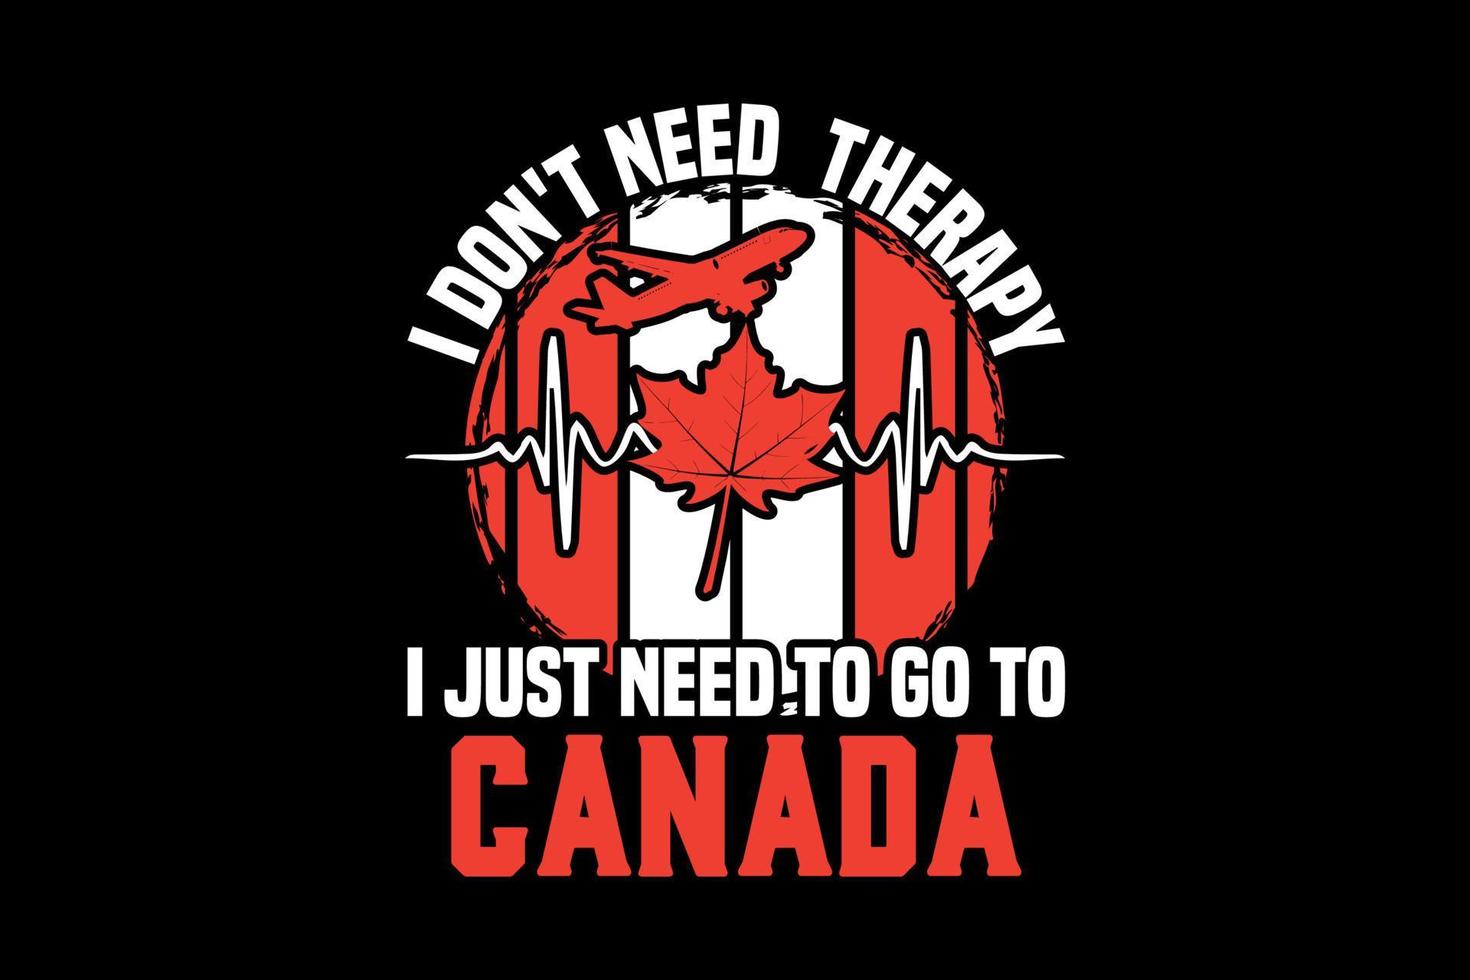 Ich brauche keine Therapie, ich muss nur nach Kanada, Thanksgiving Day T-Shirt Design vektor